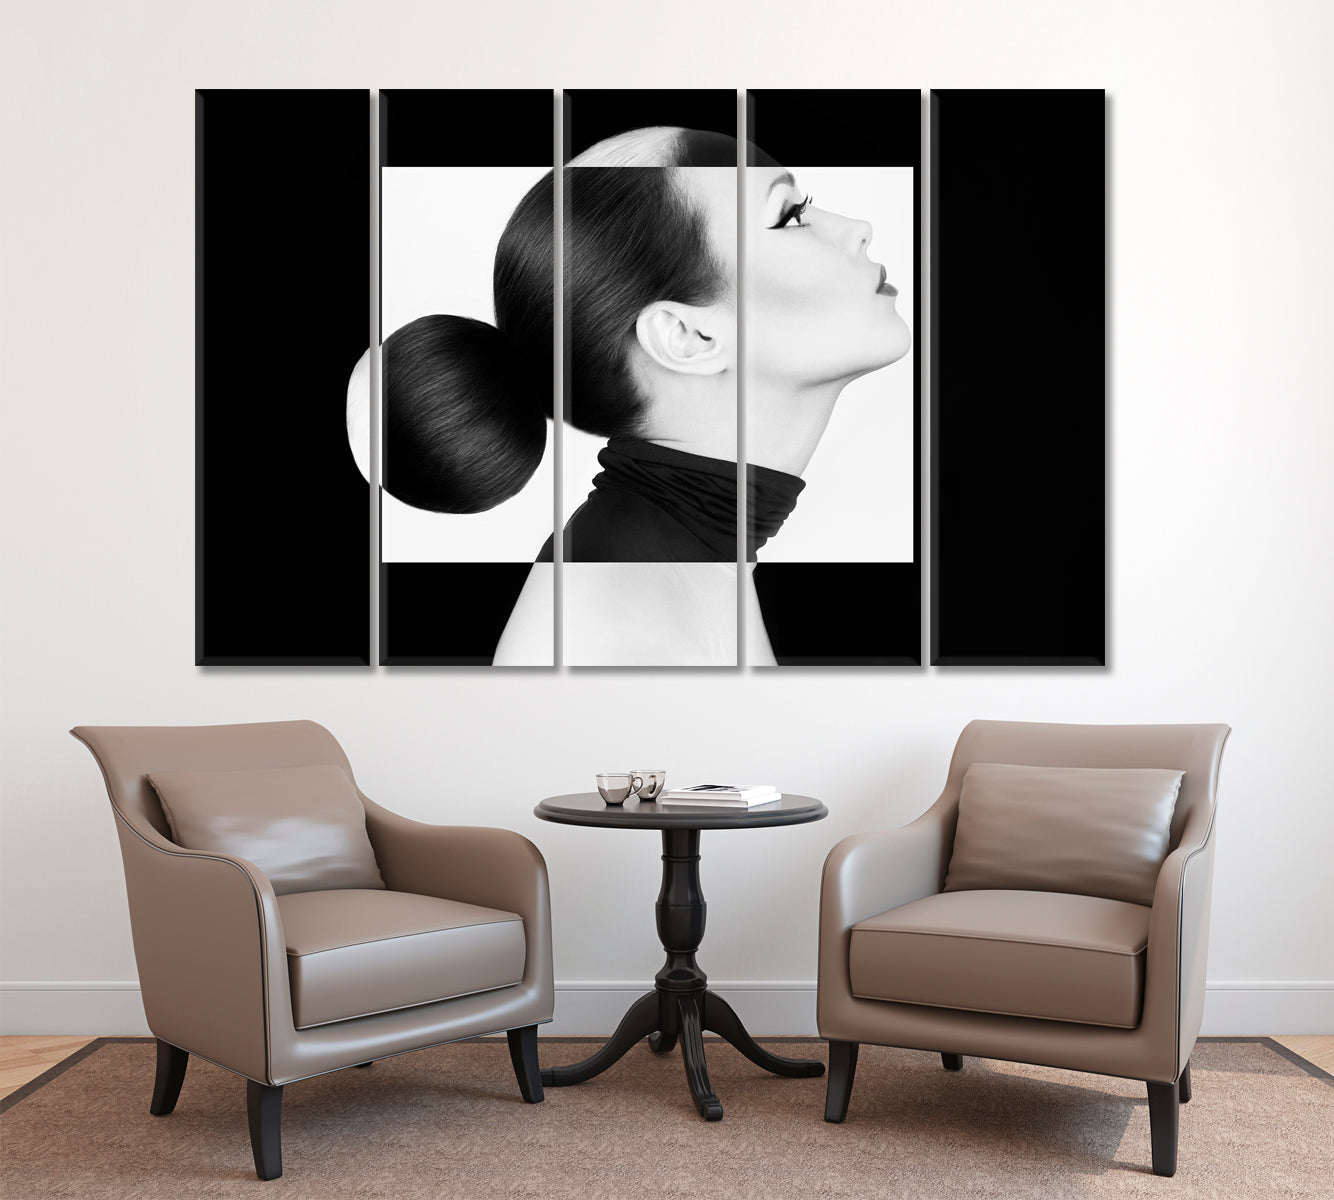 YIN YANG Black White Style Woman Fashion Portrait Black and White Wall Art Print Artesty 5 panels 36" x 24" 